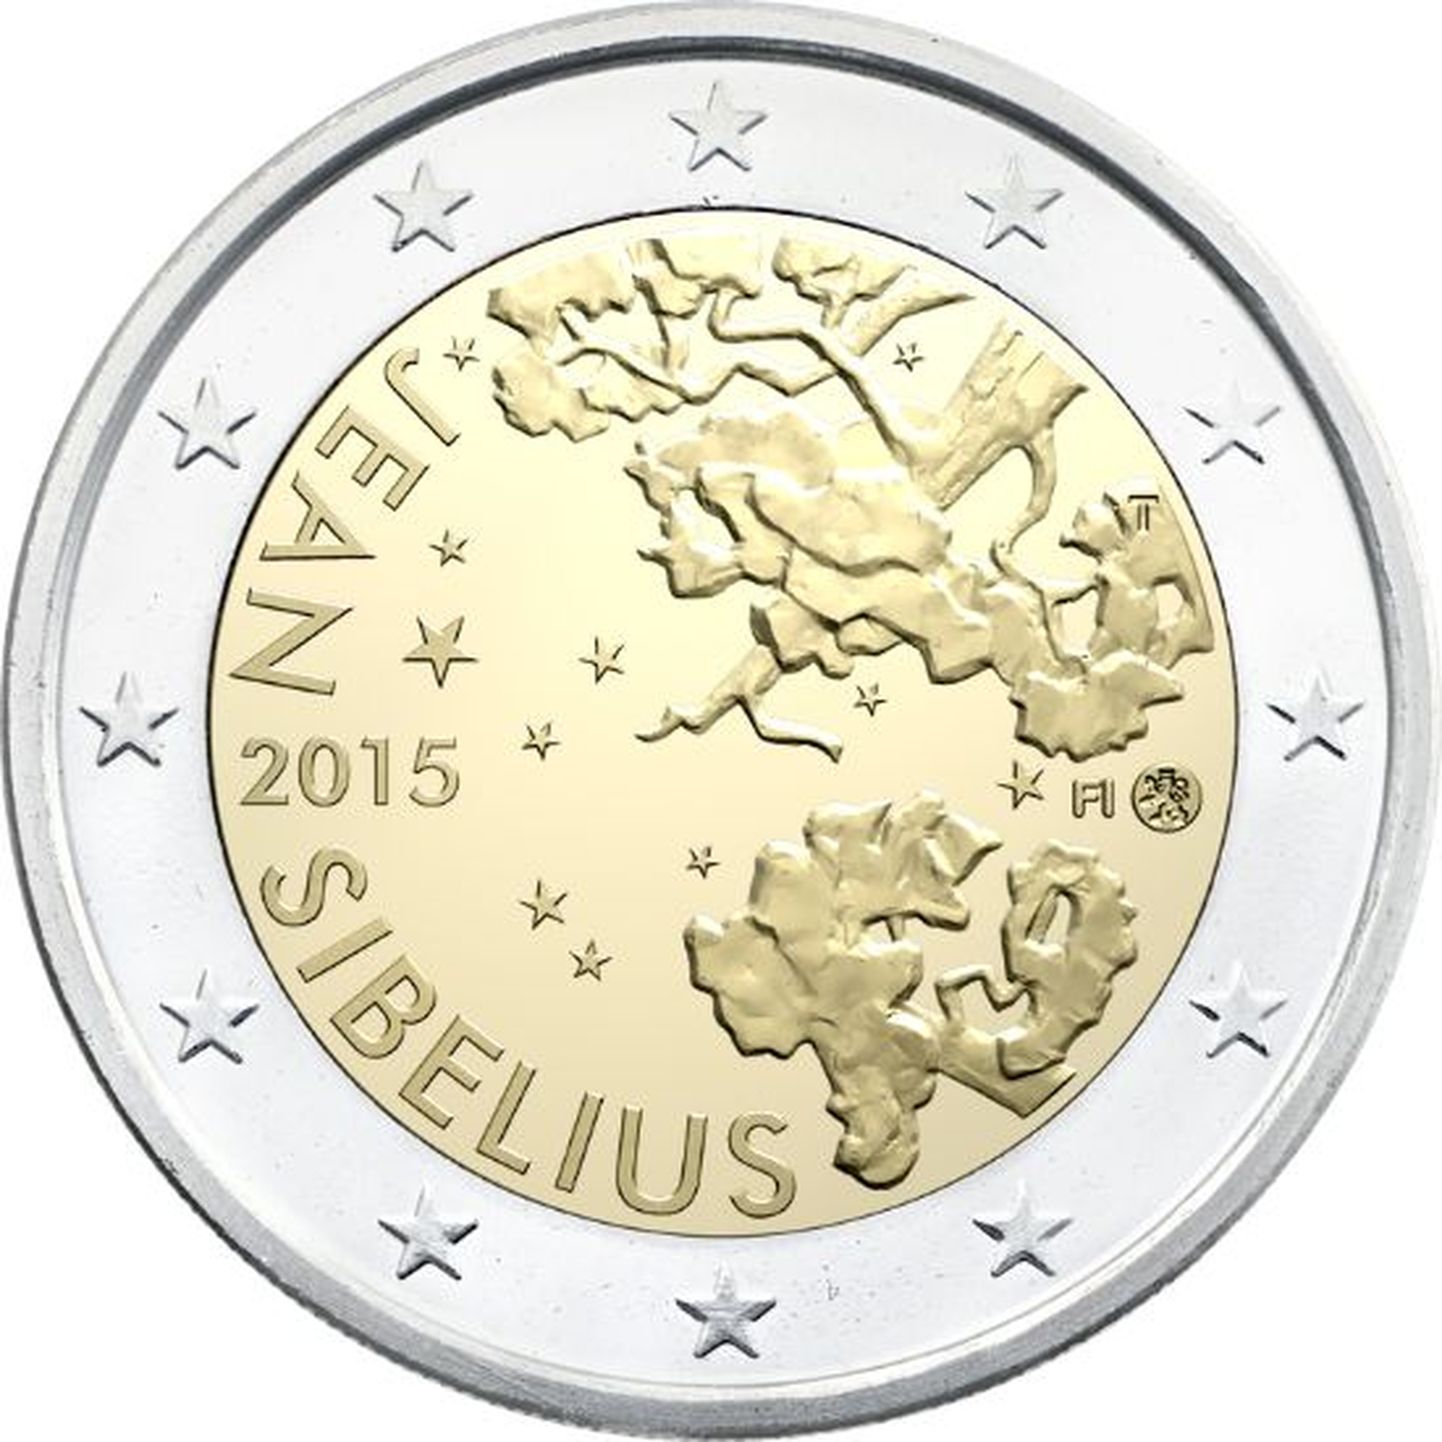 Soome 2-eurone münt, mis lastakse välja helilooja Jean Sibeliuse 150. sünniaastapäevaks.